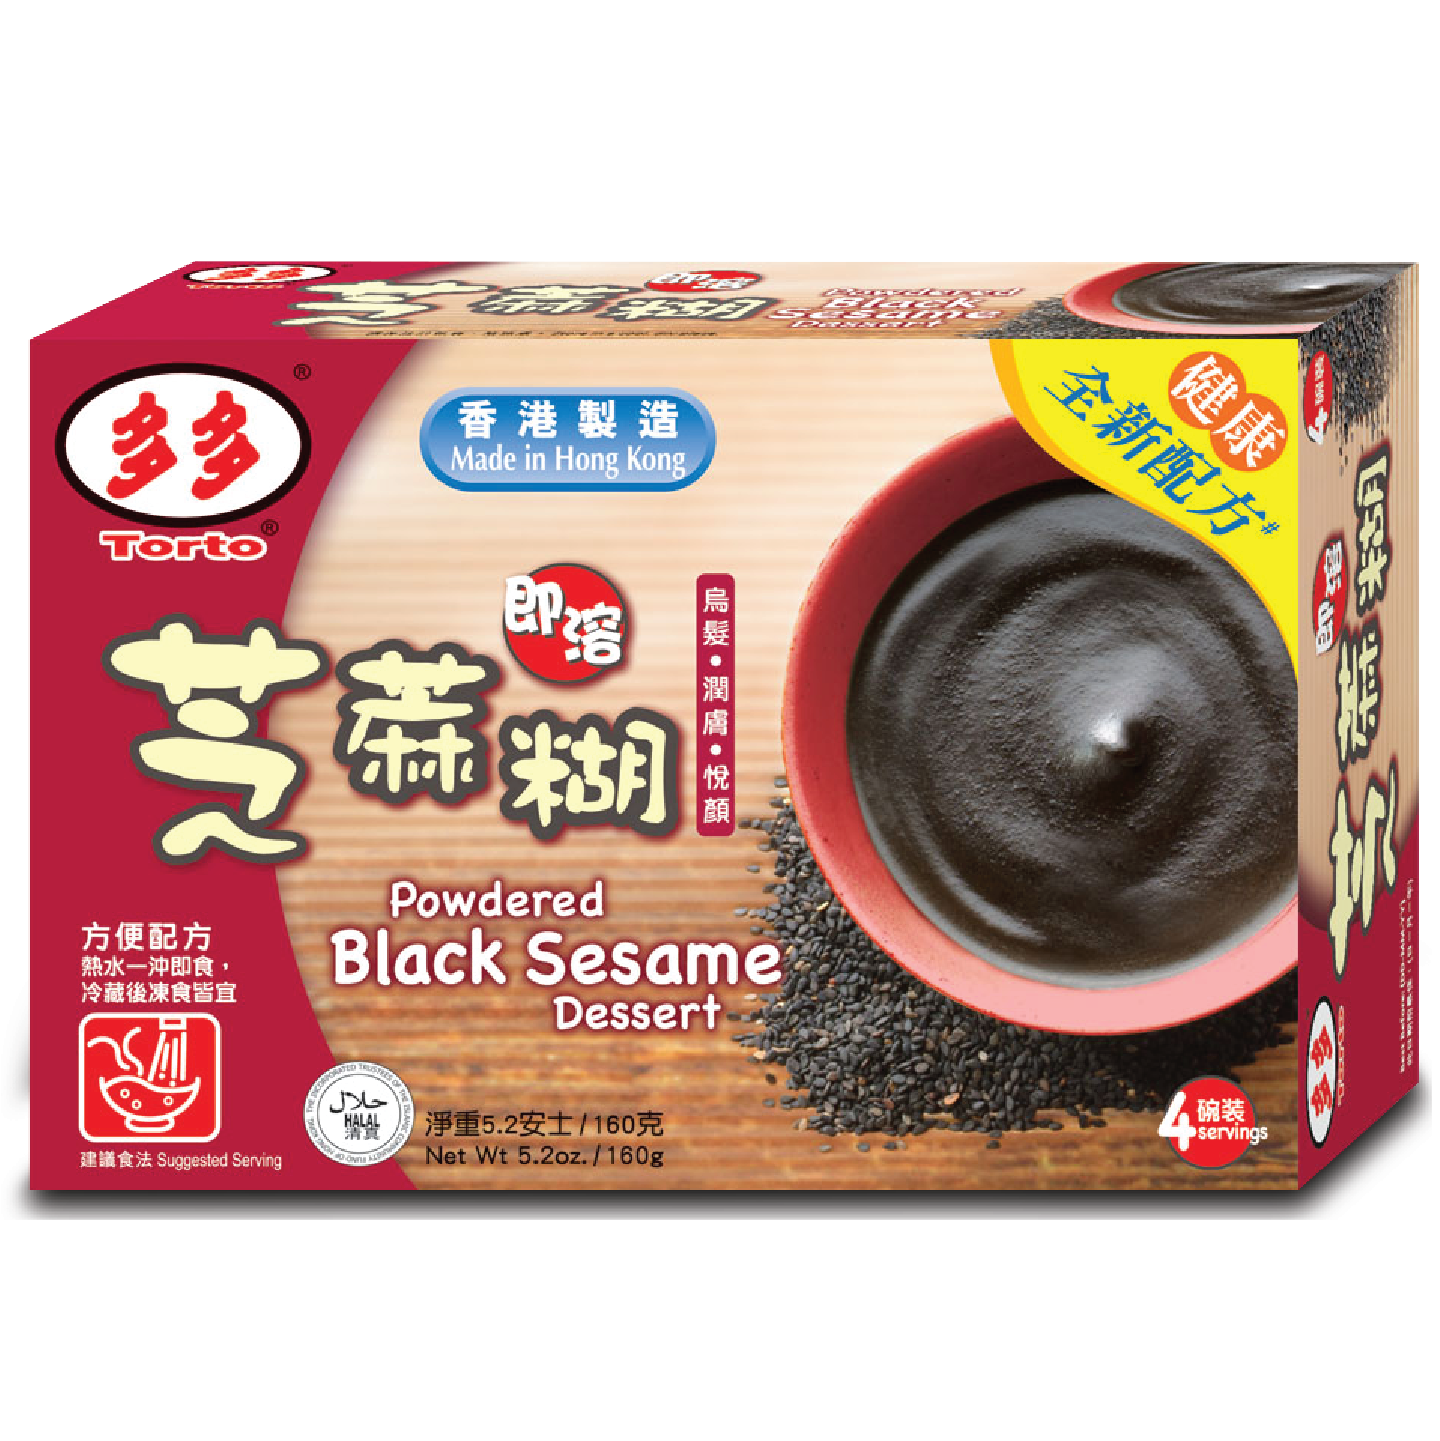 Torto Black Sesame Dessert 160G 多多即溶芝麻糊 160克